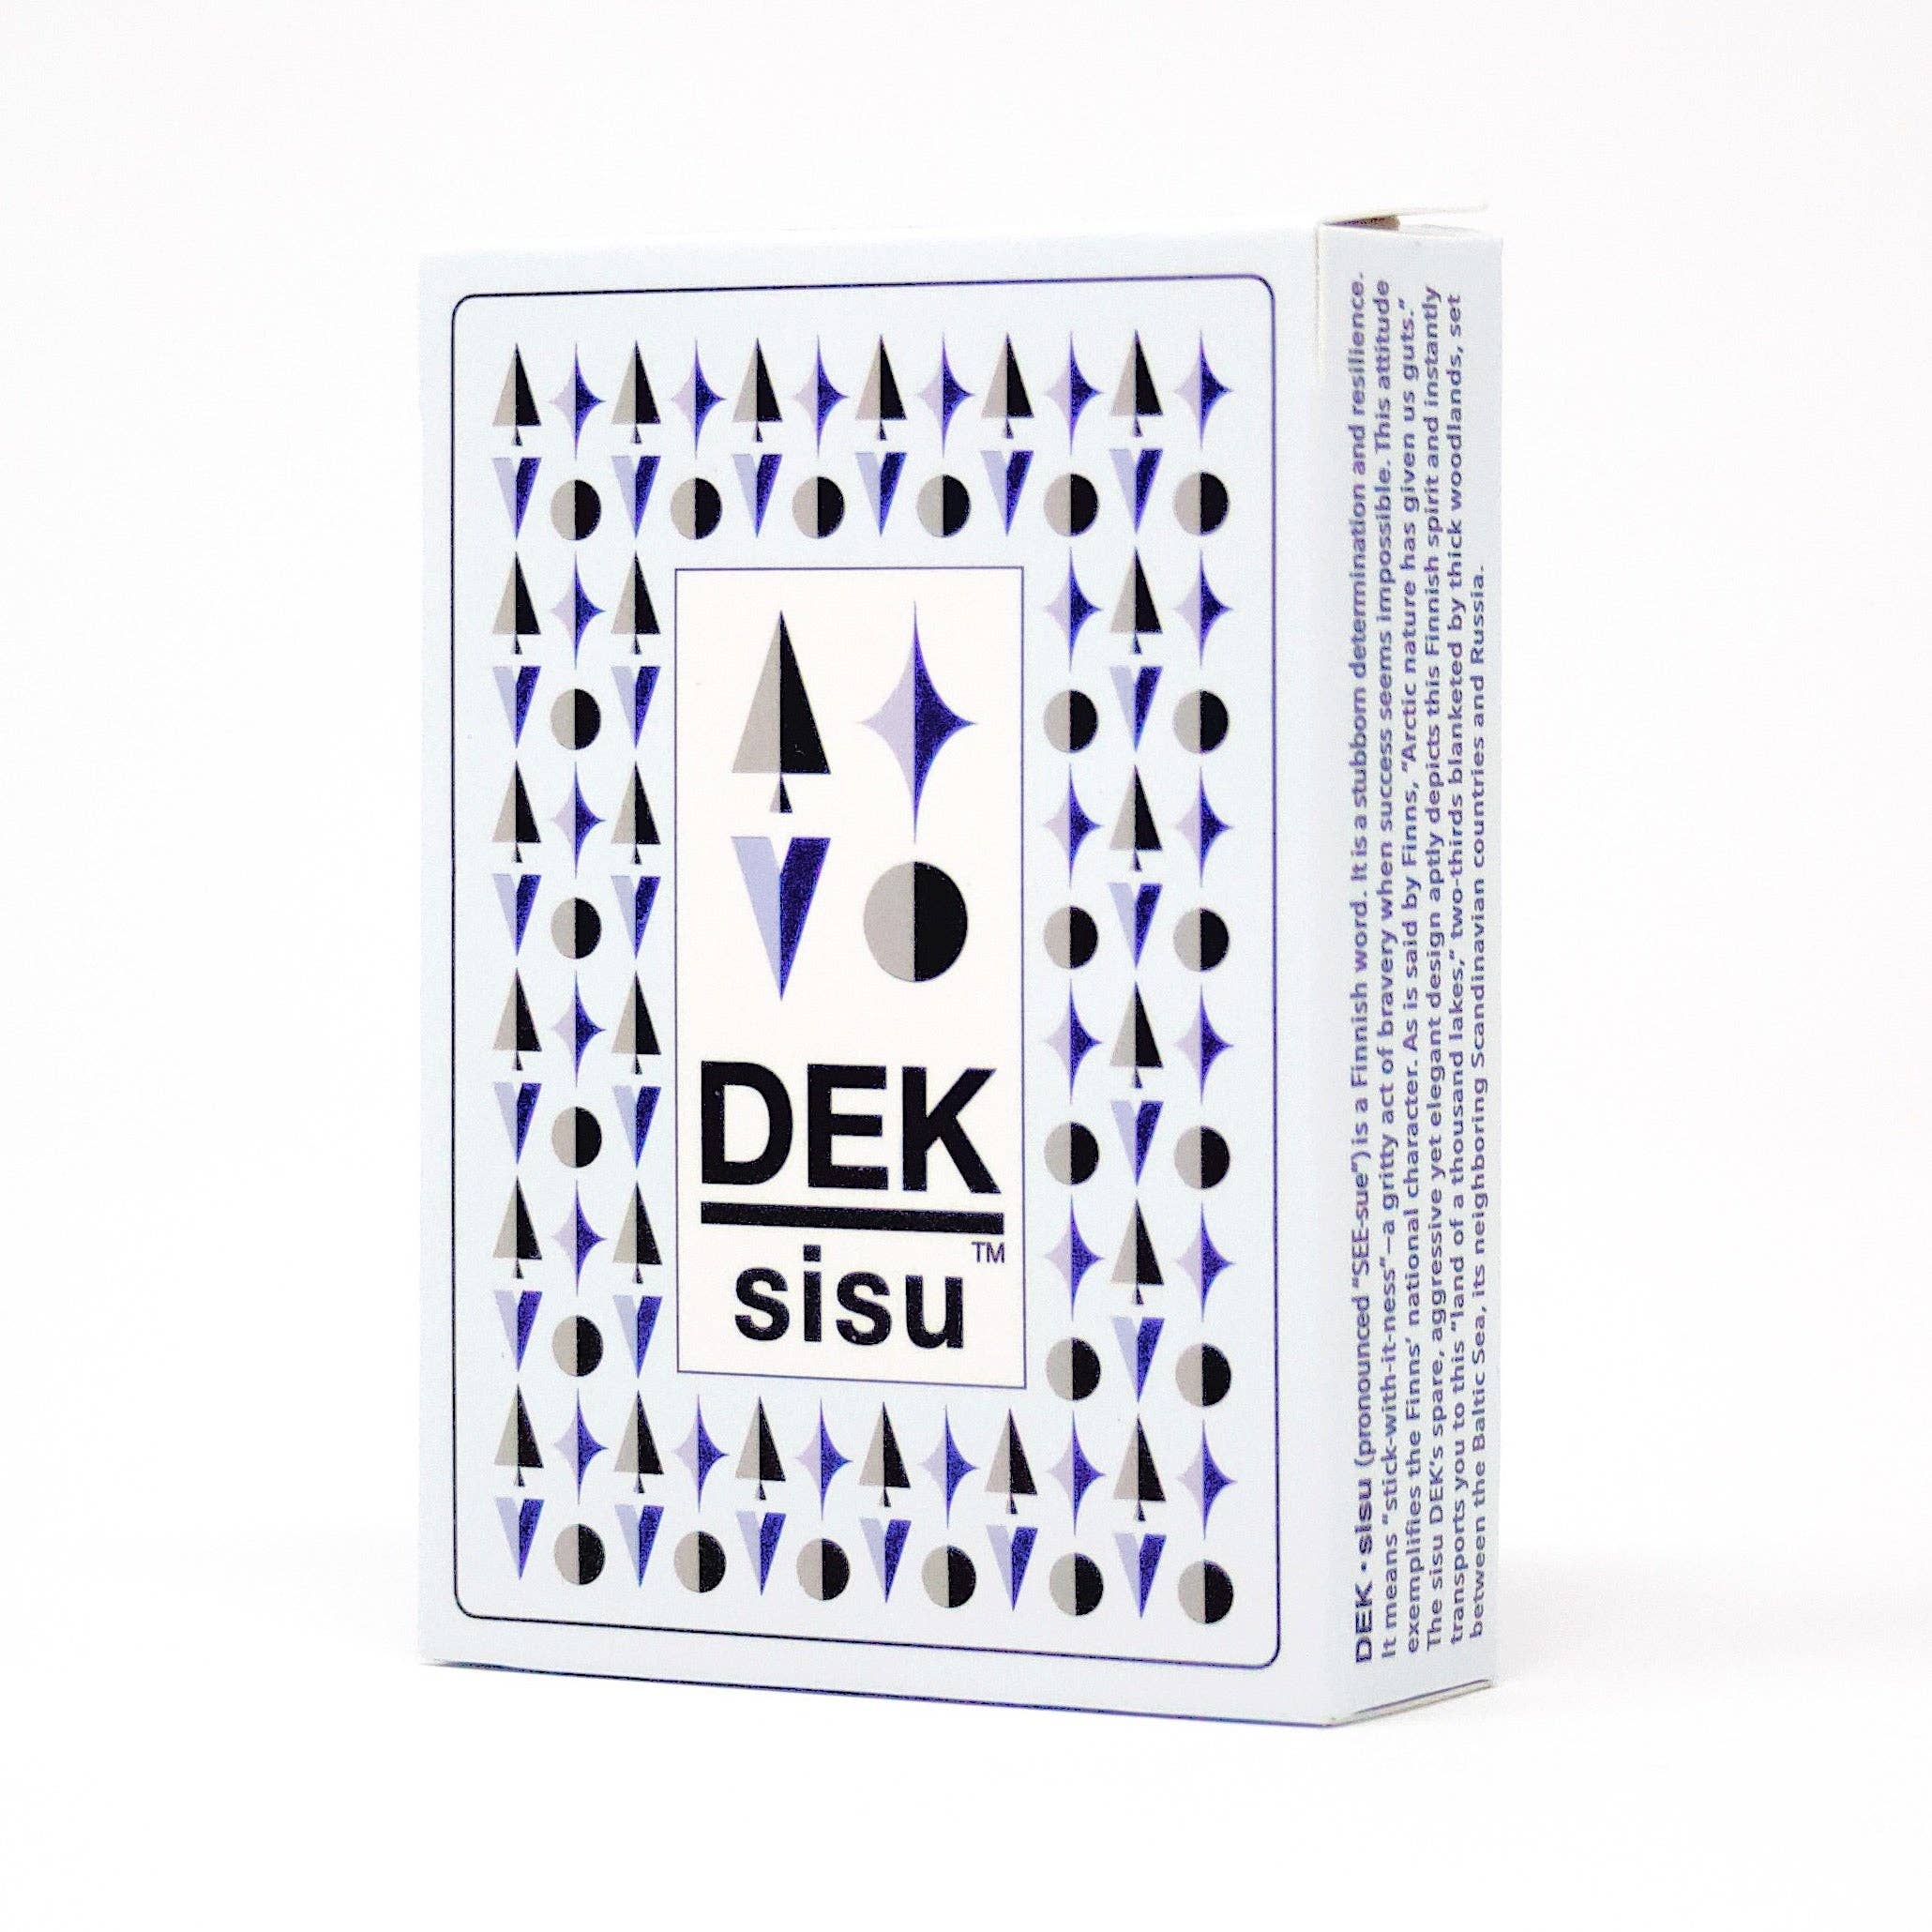 Playing Cards: DEK Sisu (Finland)